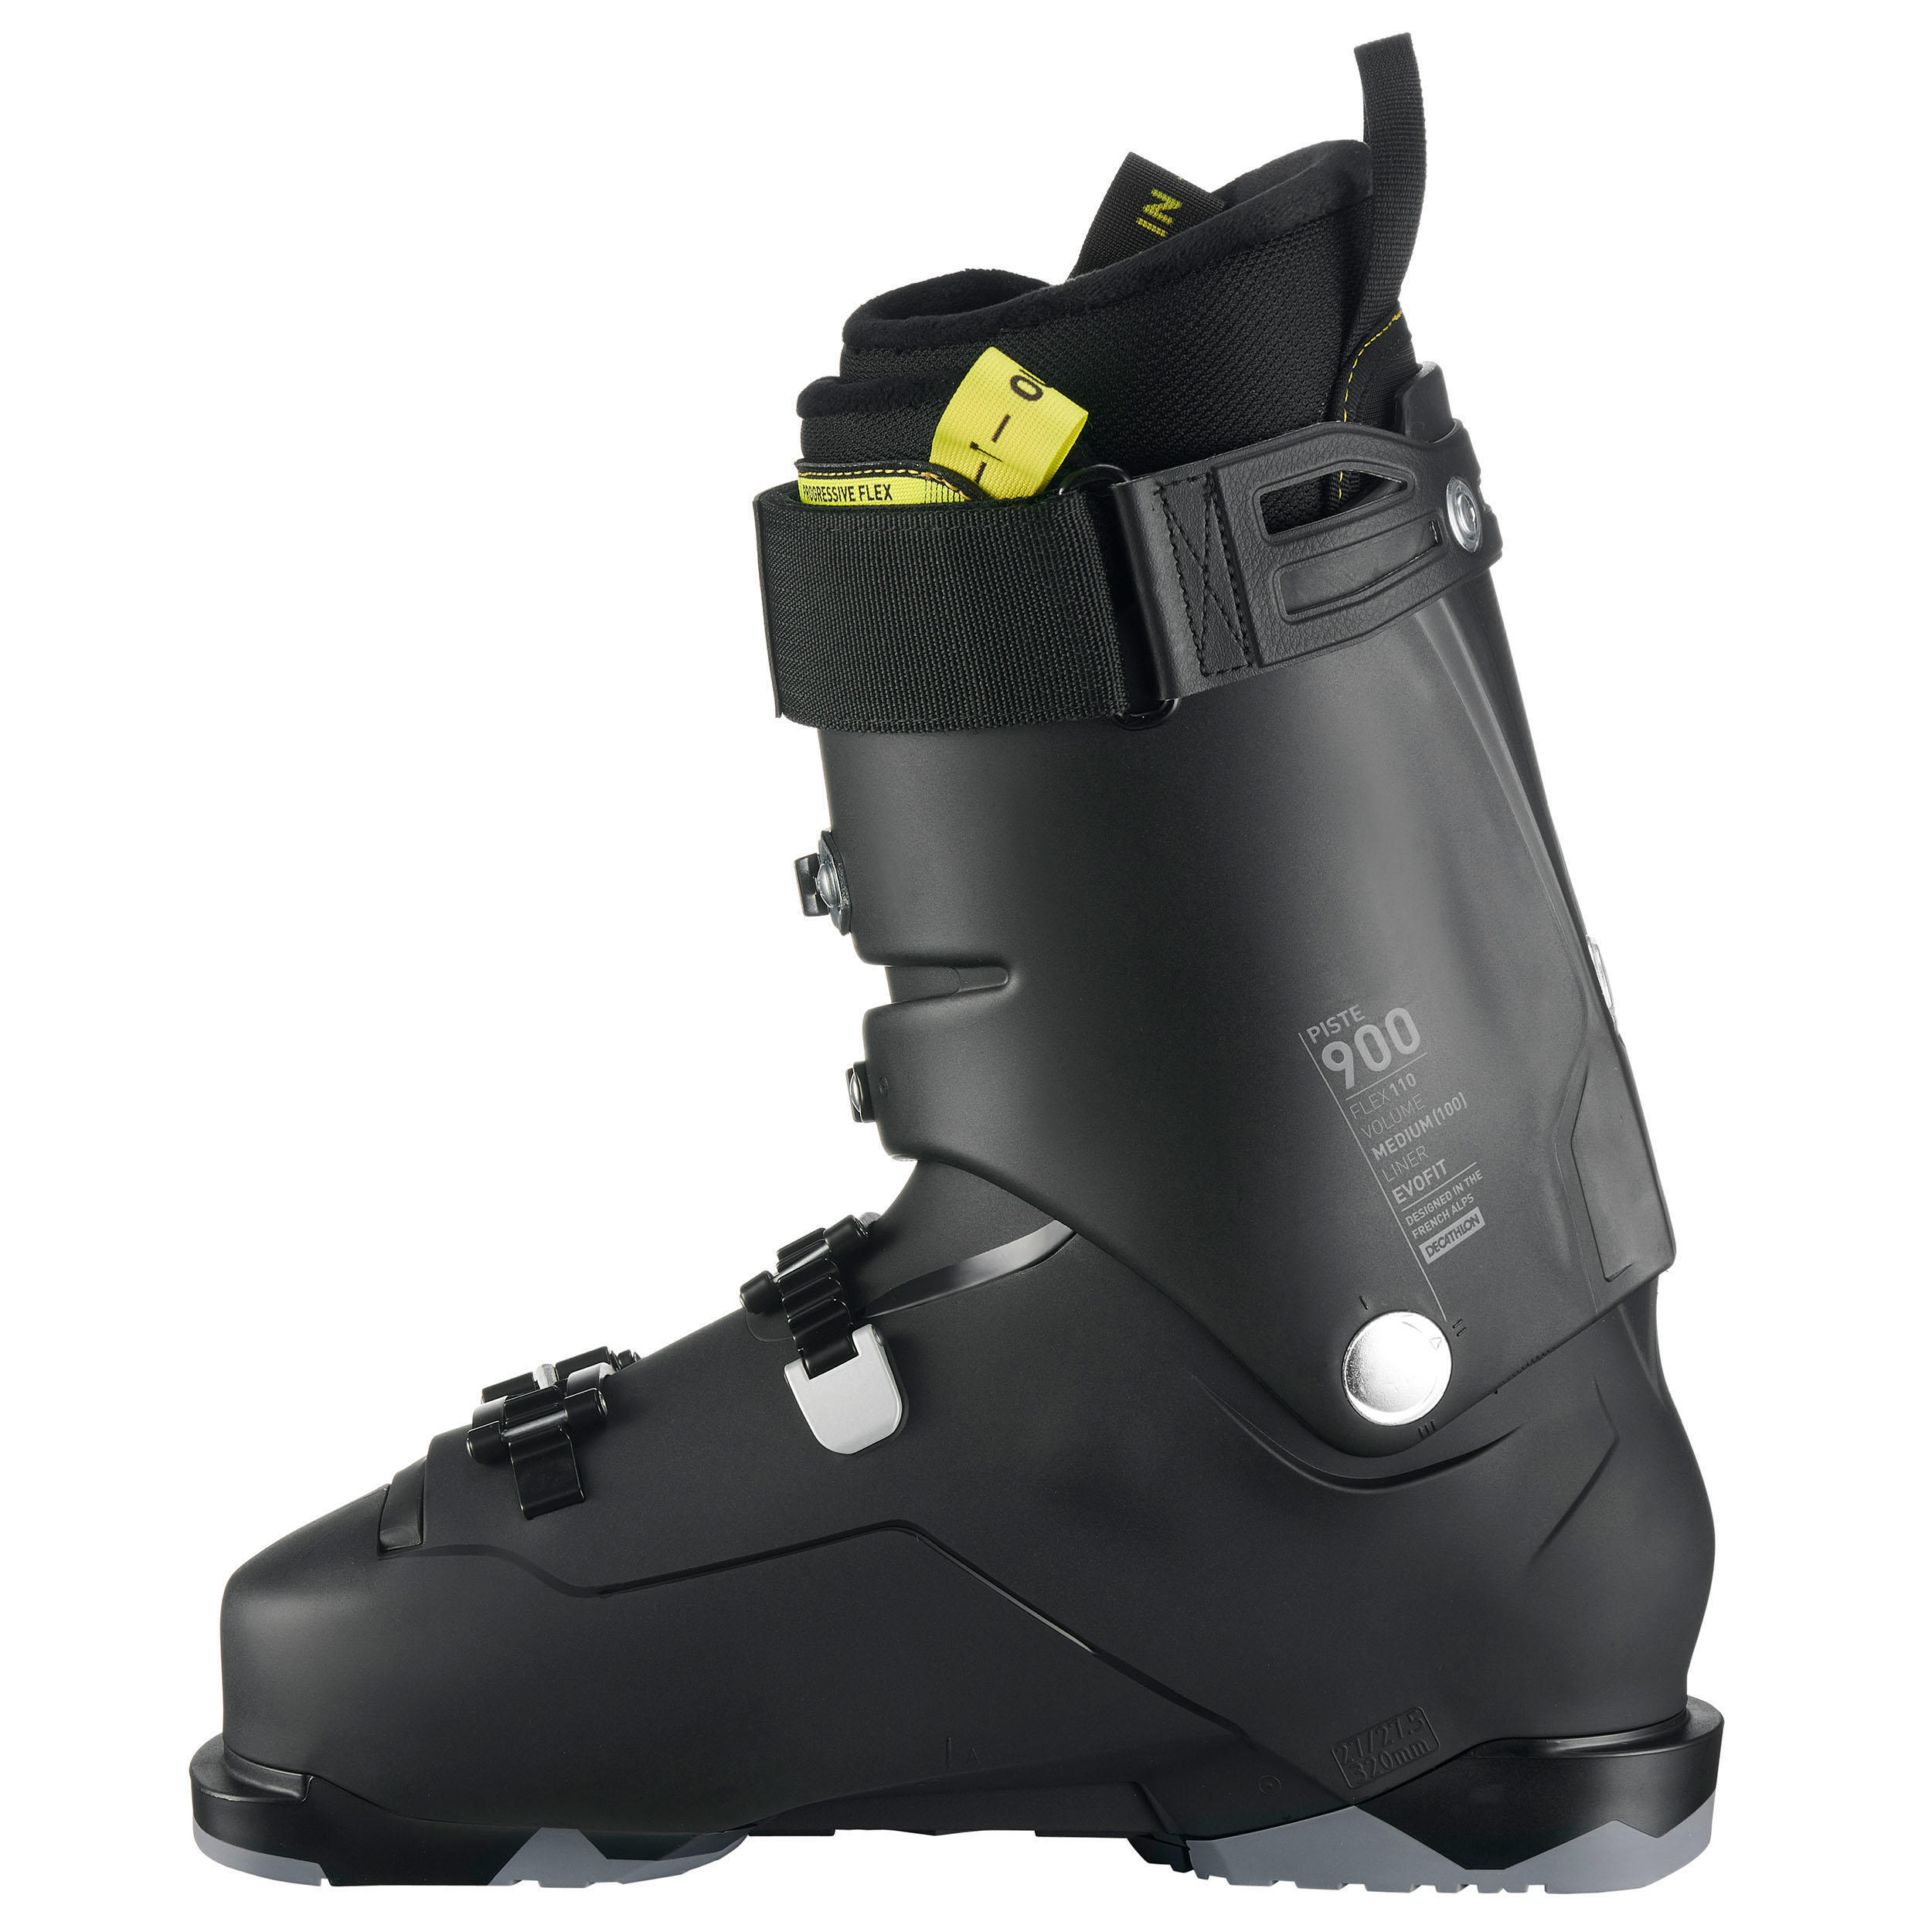 Refurbished Mens Downhill Ski Boots Fit Black Yellow - B Grade 6/7